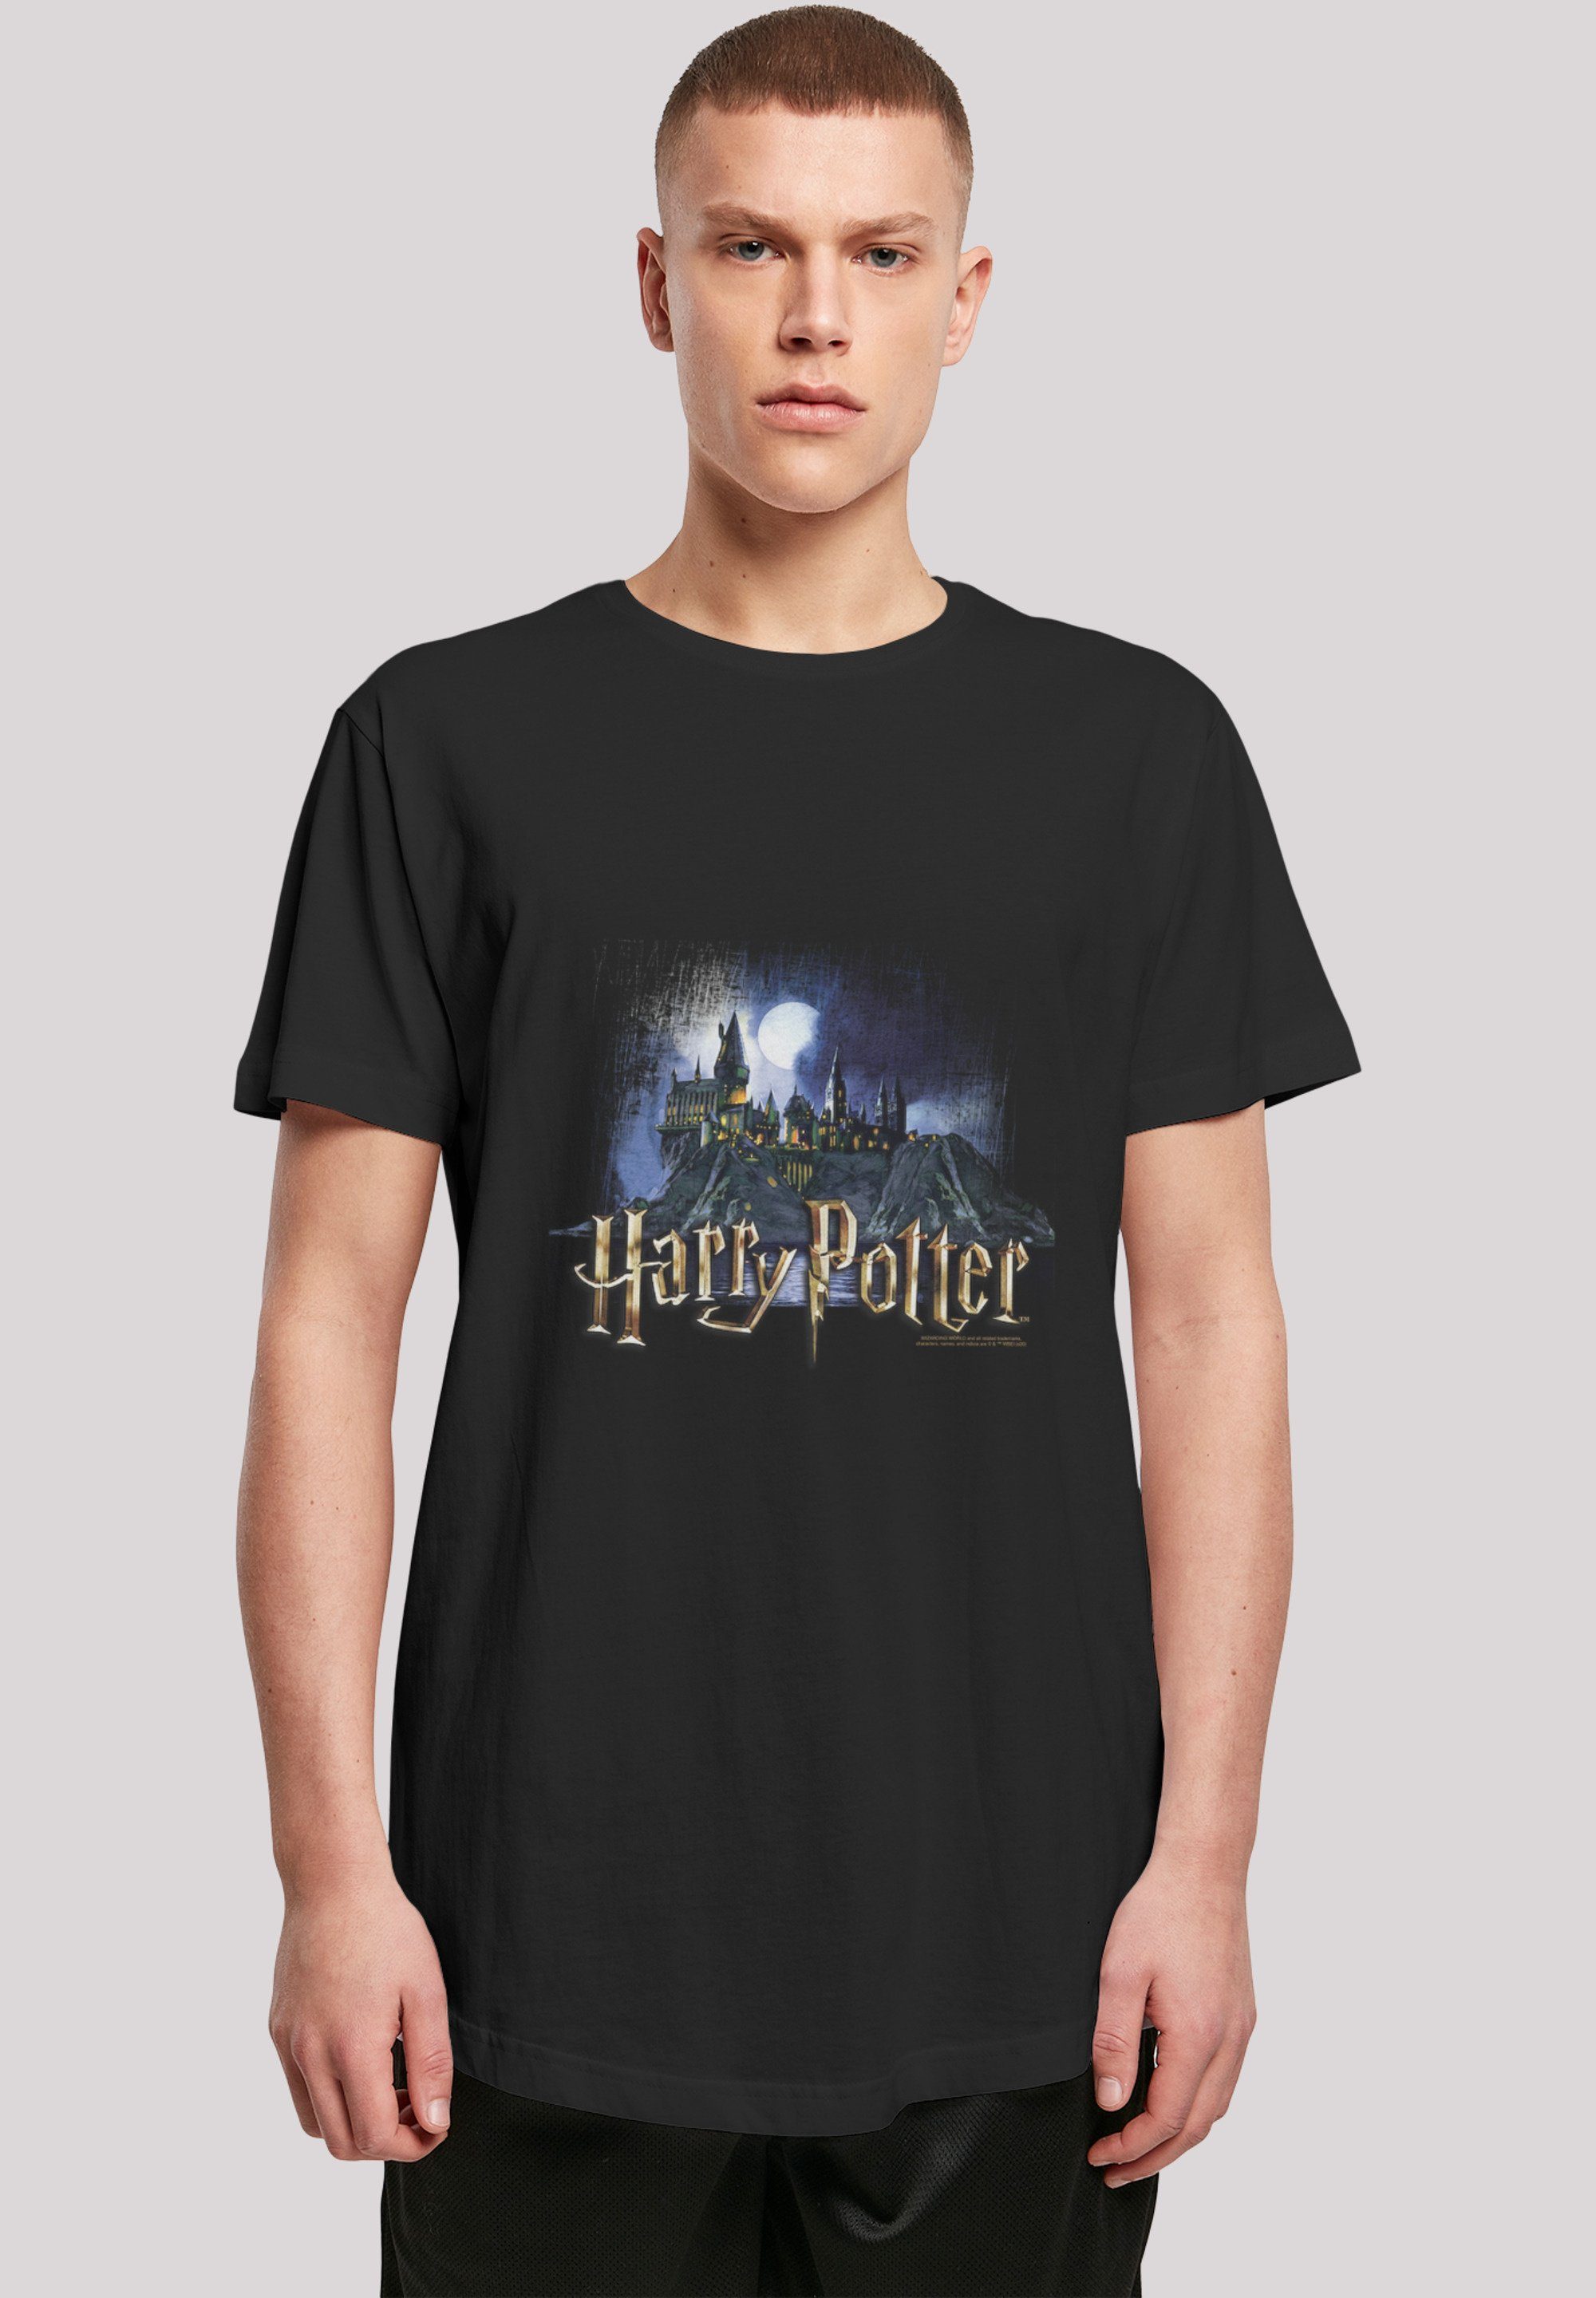 F4NT4STIC T-Shirt Harry Potter Print Hexerei für Hogwarts Zauberei Schule Castle und